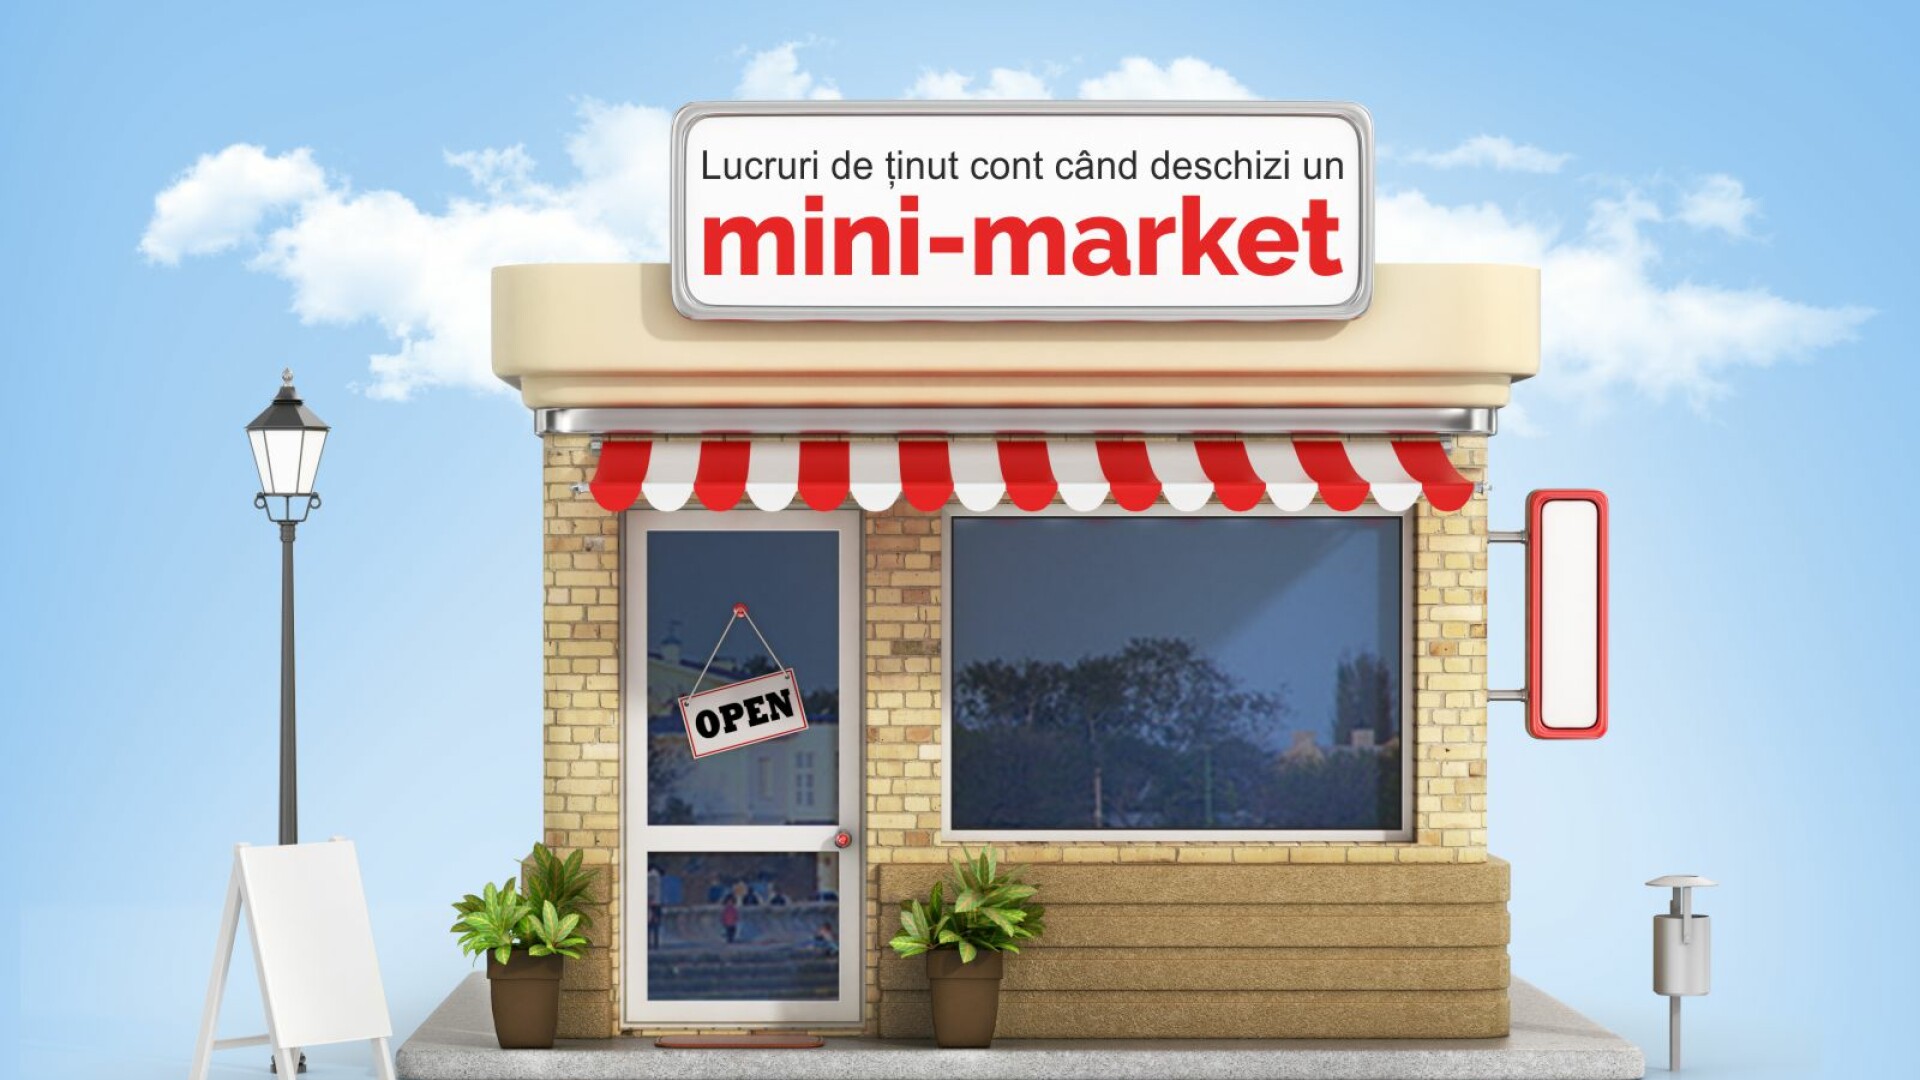 mini market